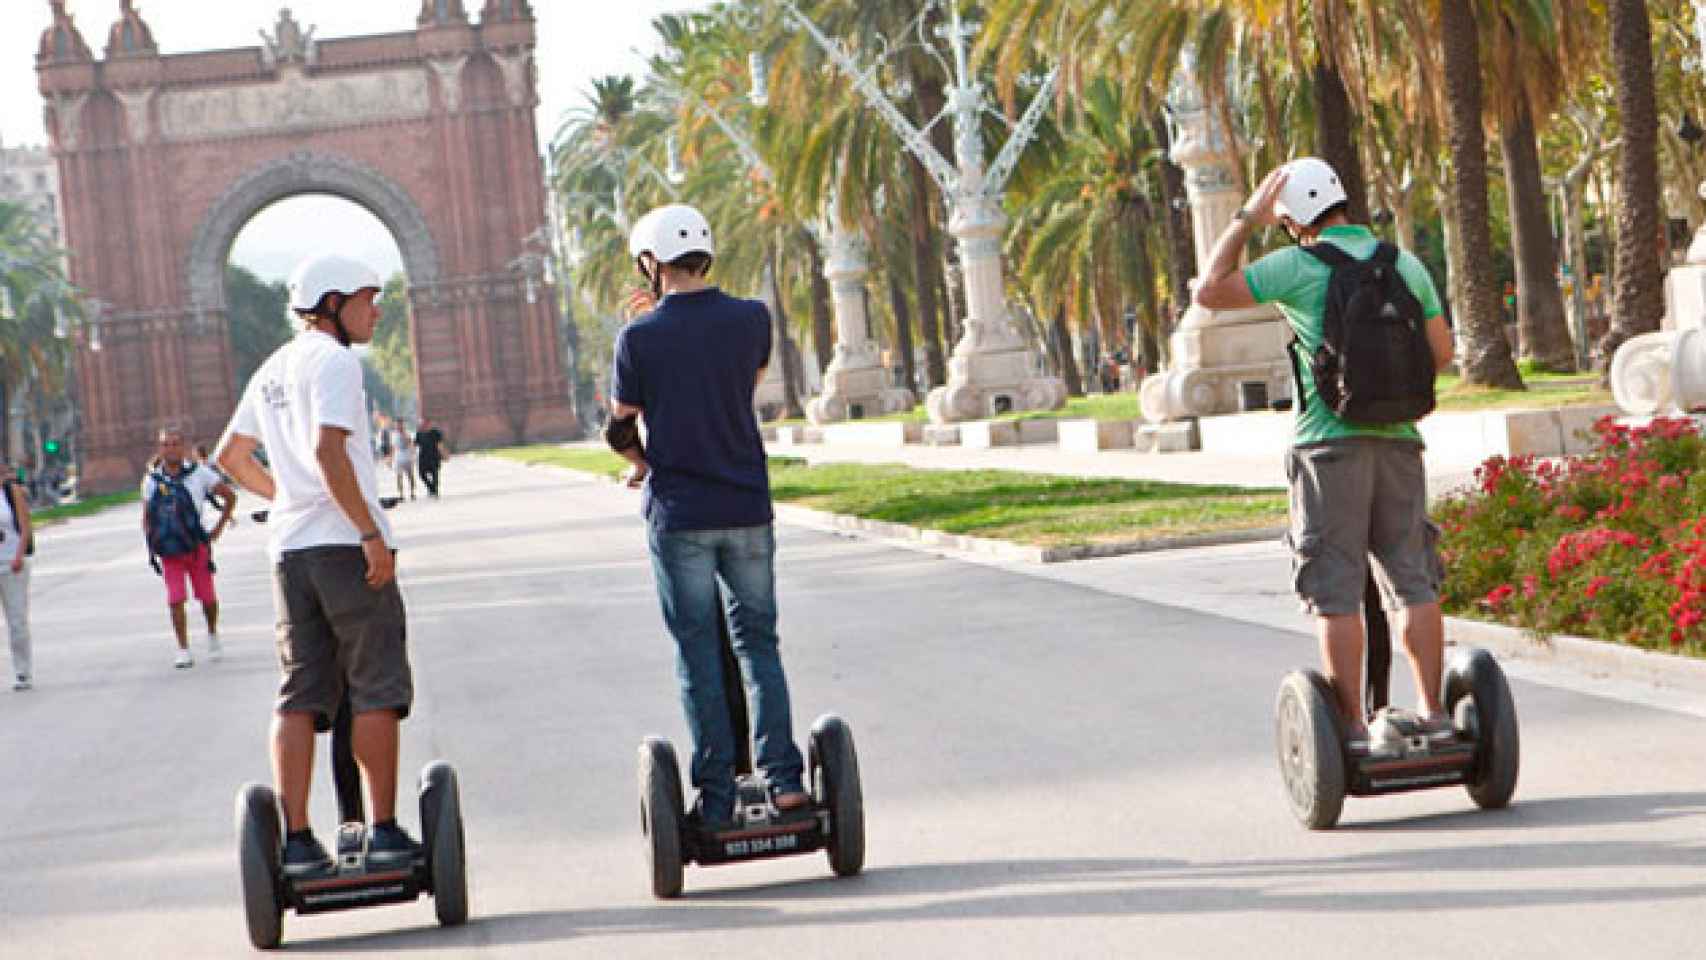 Tres turistas circulando con un 'segway' en el paseo Lluís Companys de Barcelona / CG